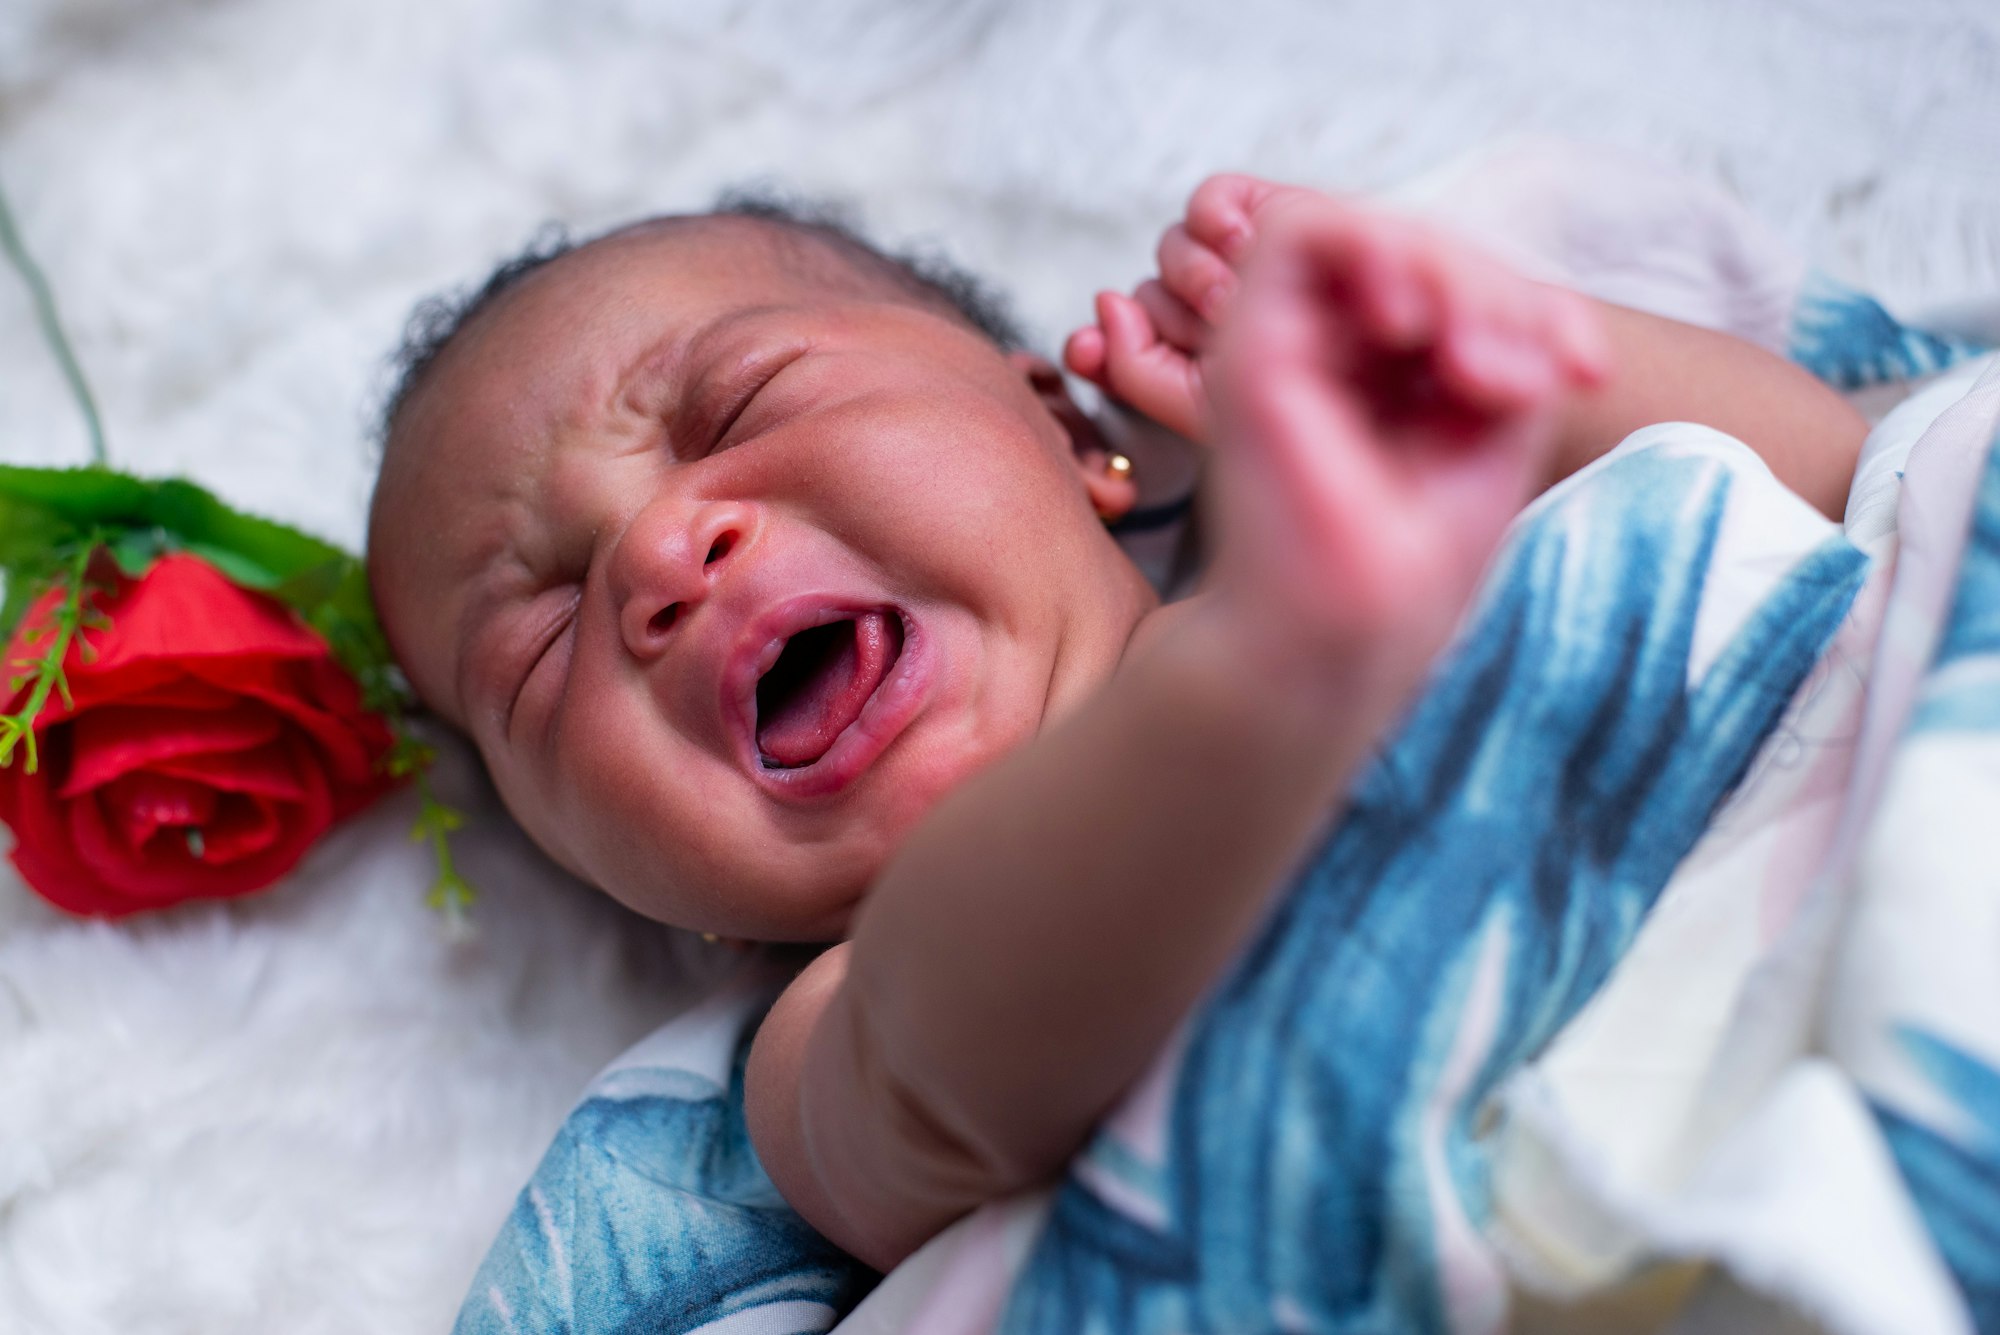 Baby crying #babycrying#babyshoot#redrose#naijababies
